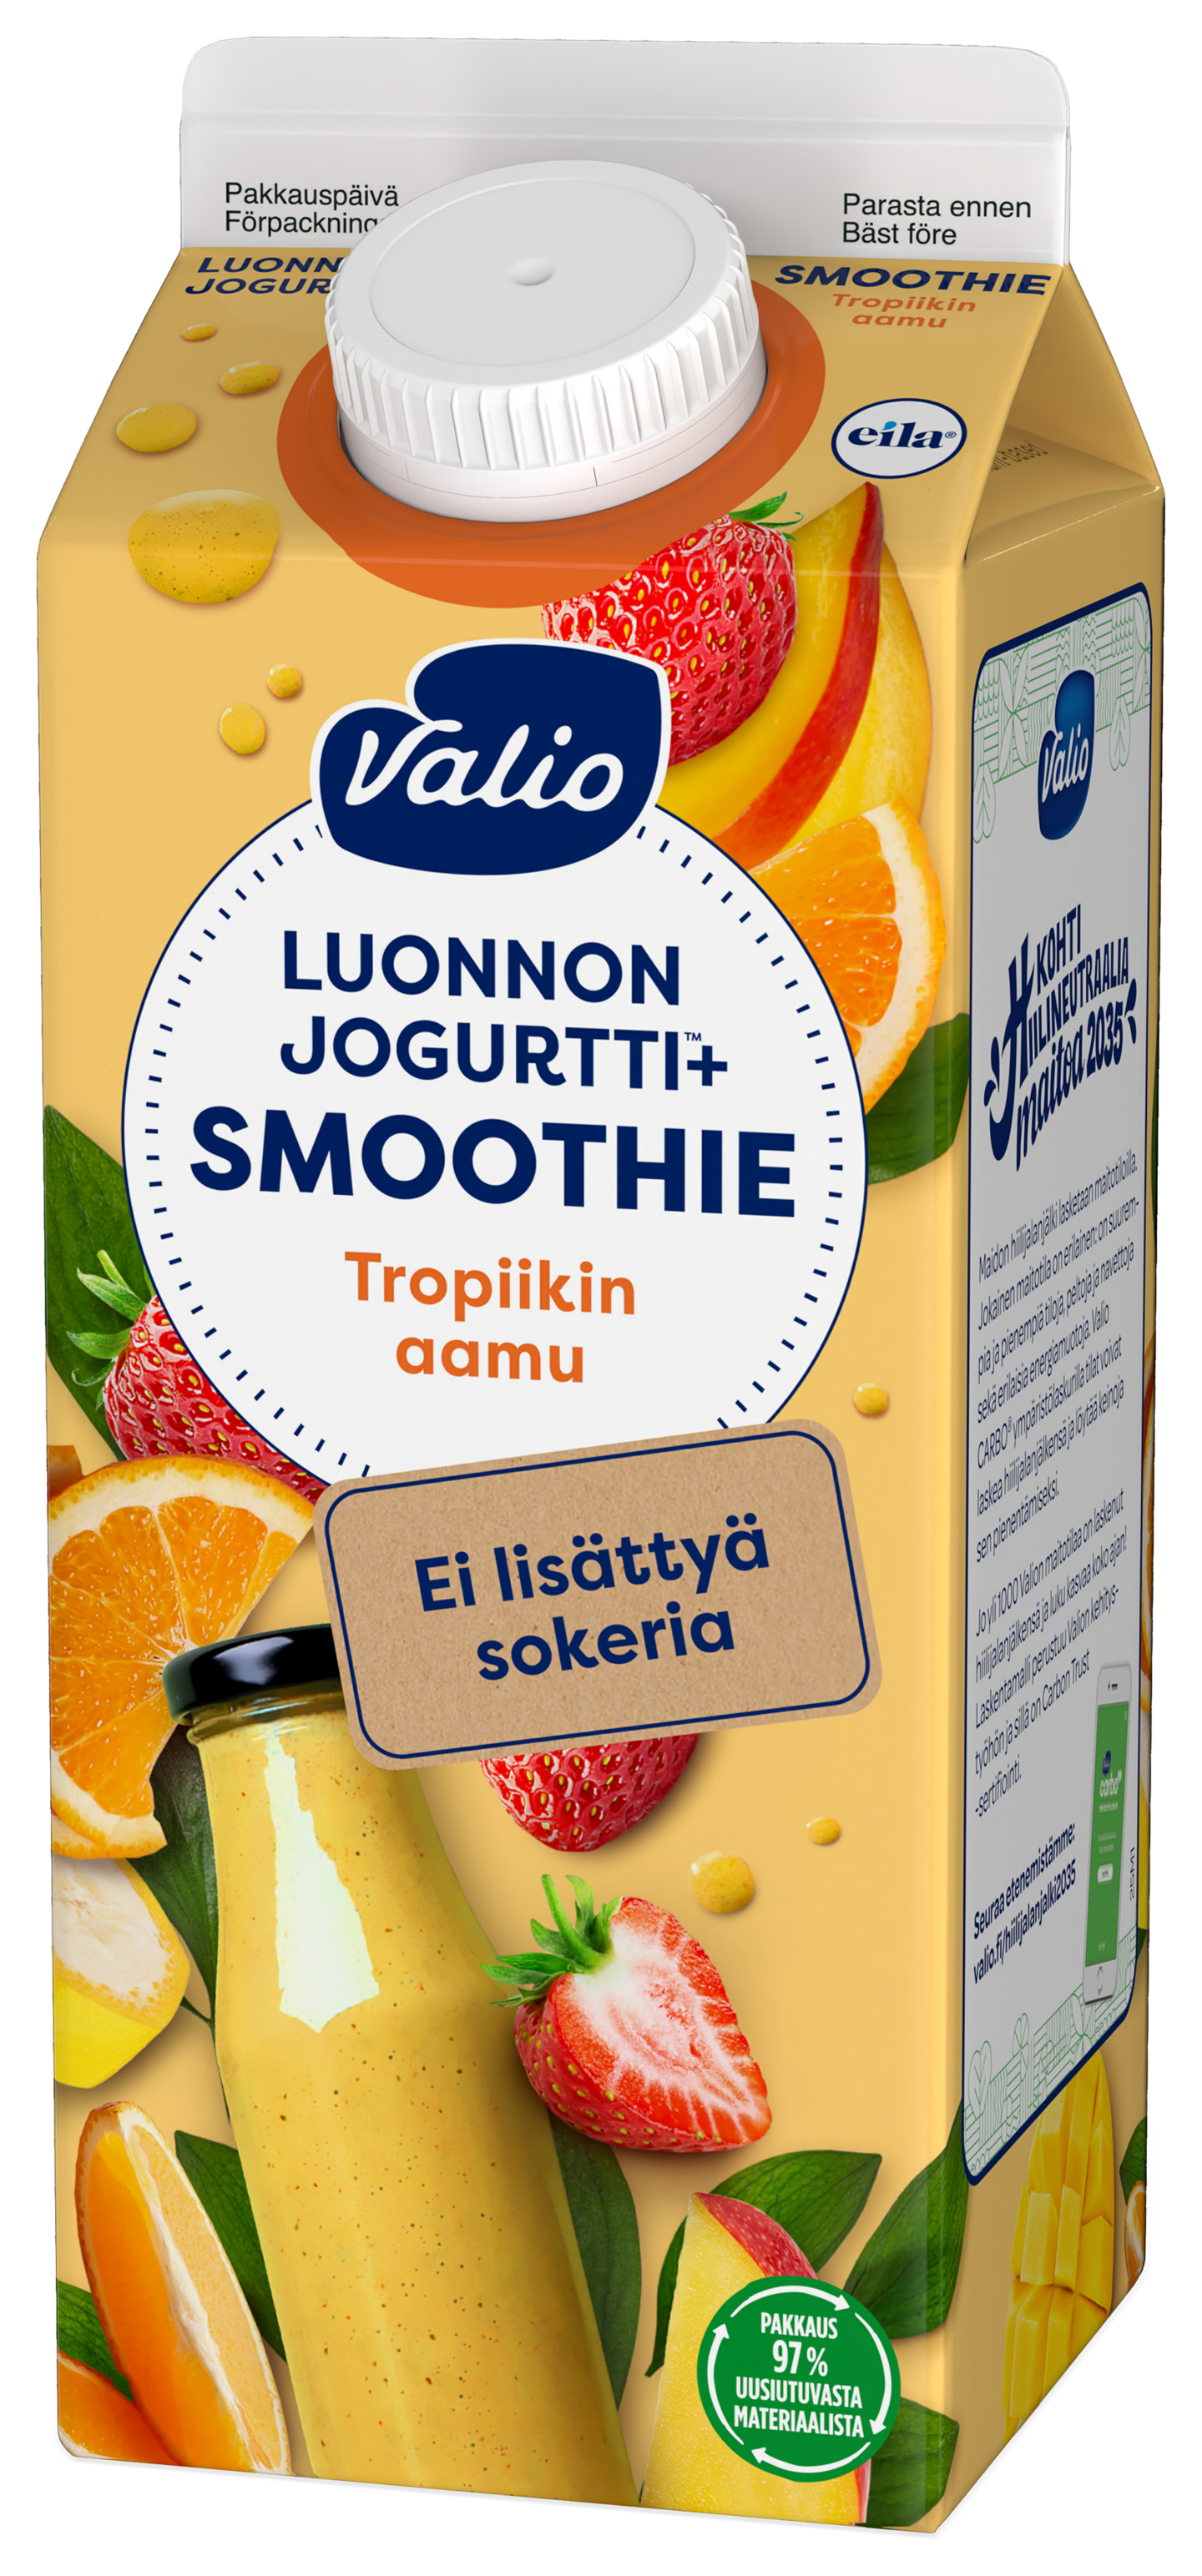 Valio Luonnonjogurtti+ smoothie 0,75l tropiikin aamu ei lisättyä sokeria, laktoositon